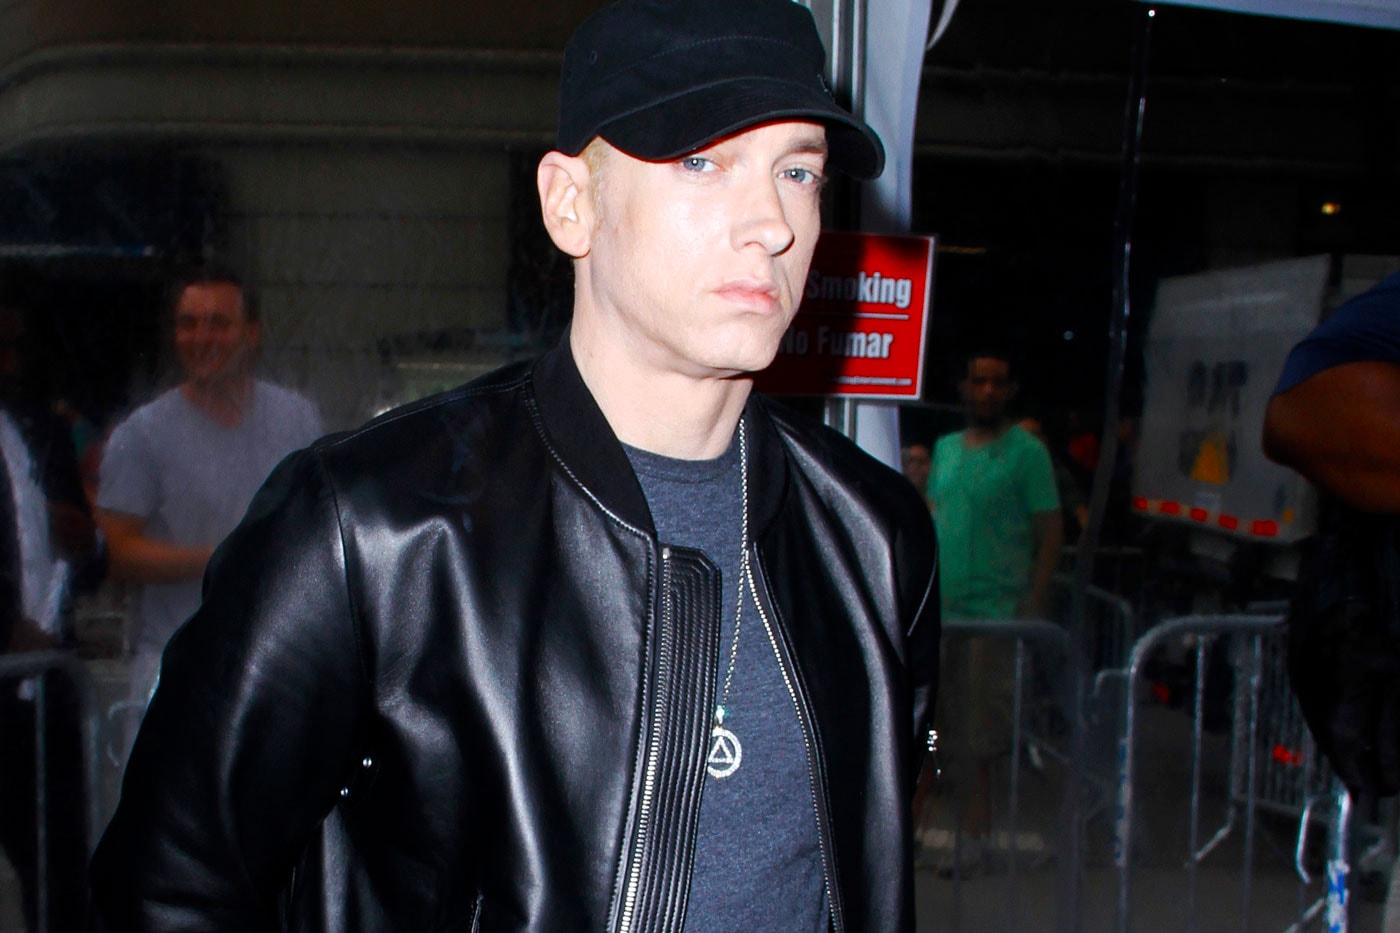 15-Year Old Boy Arrested After Posting Eminem Lyrics